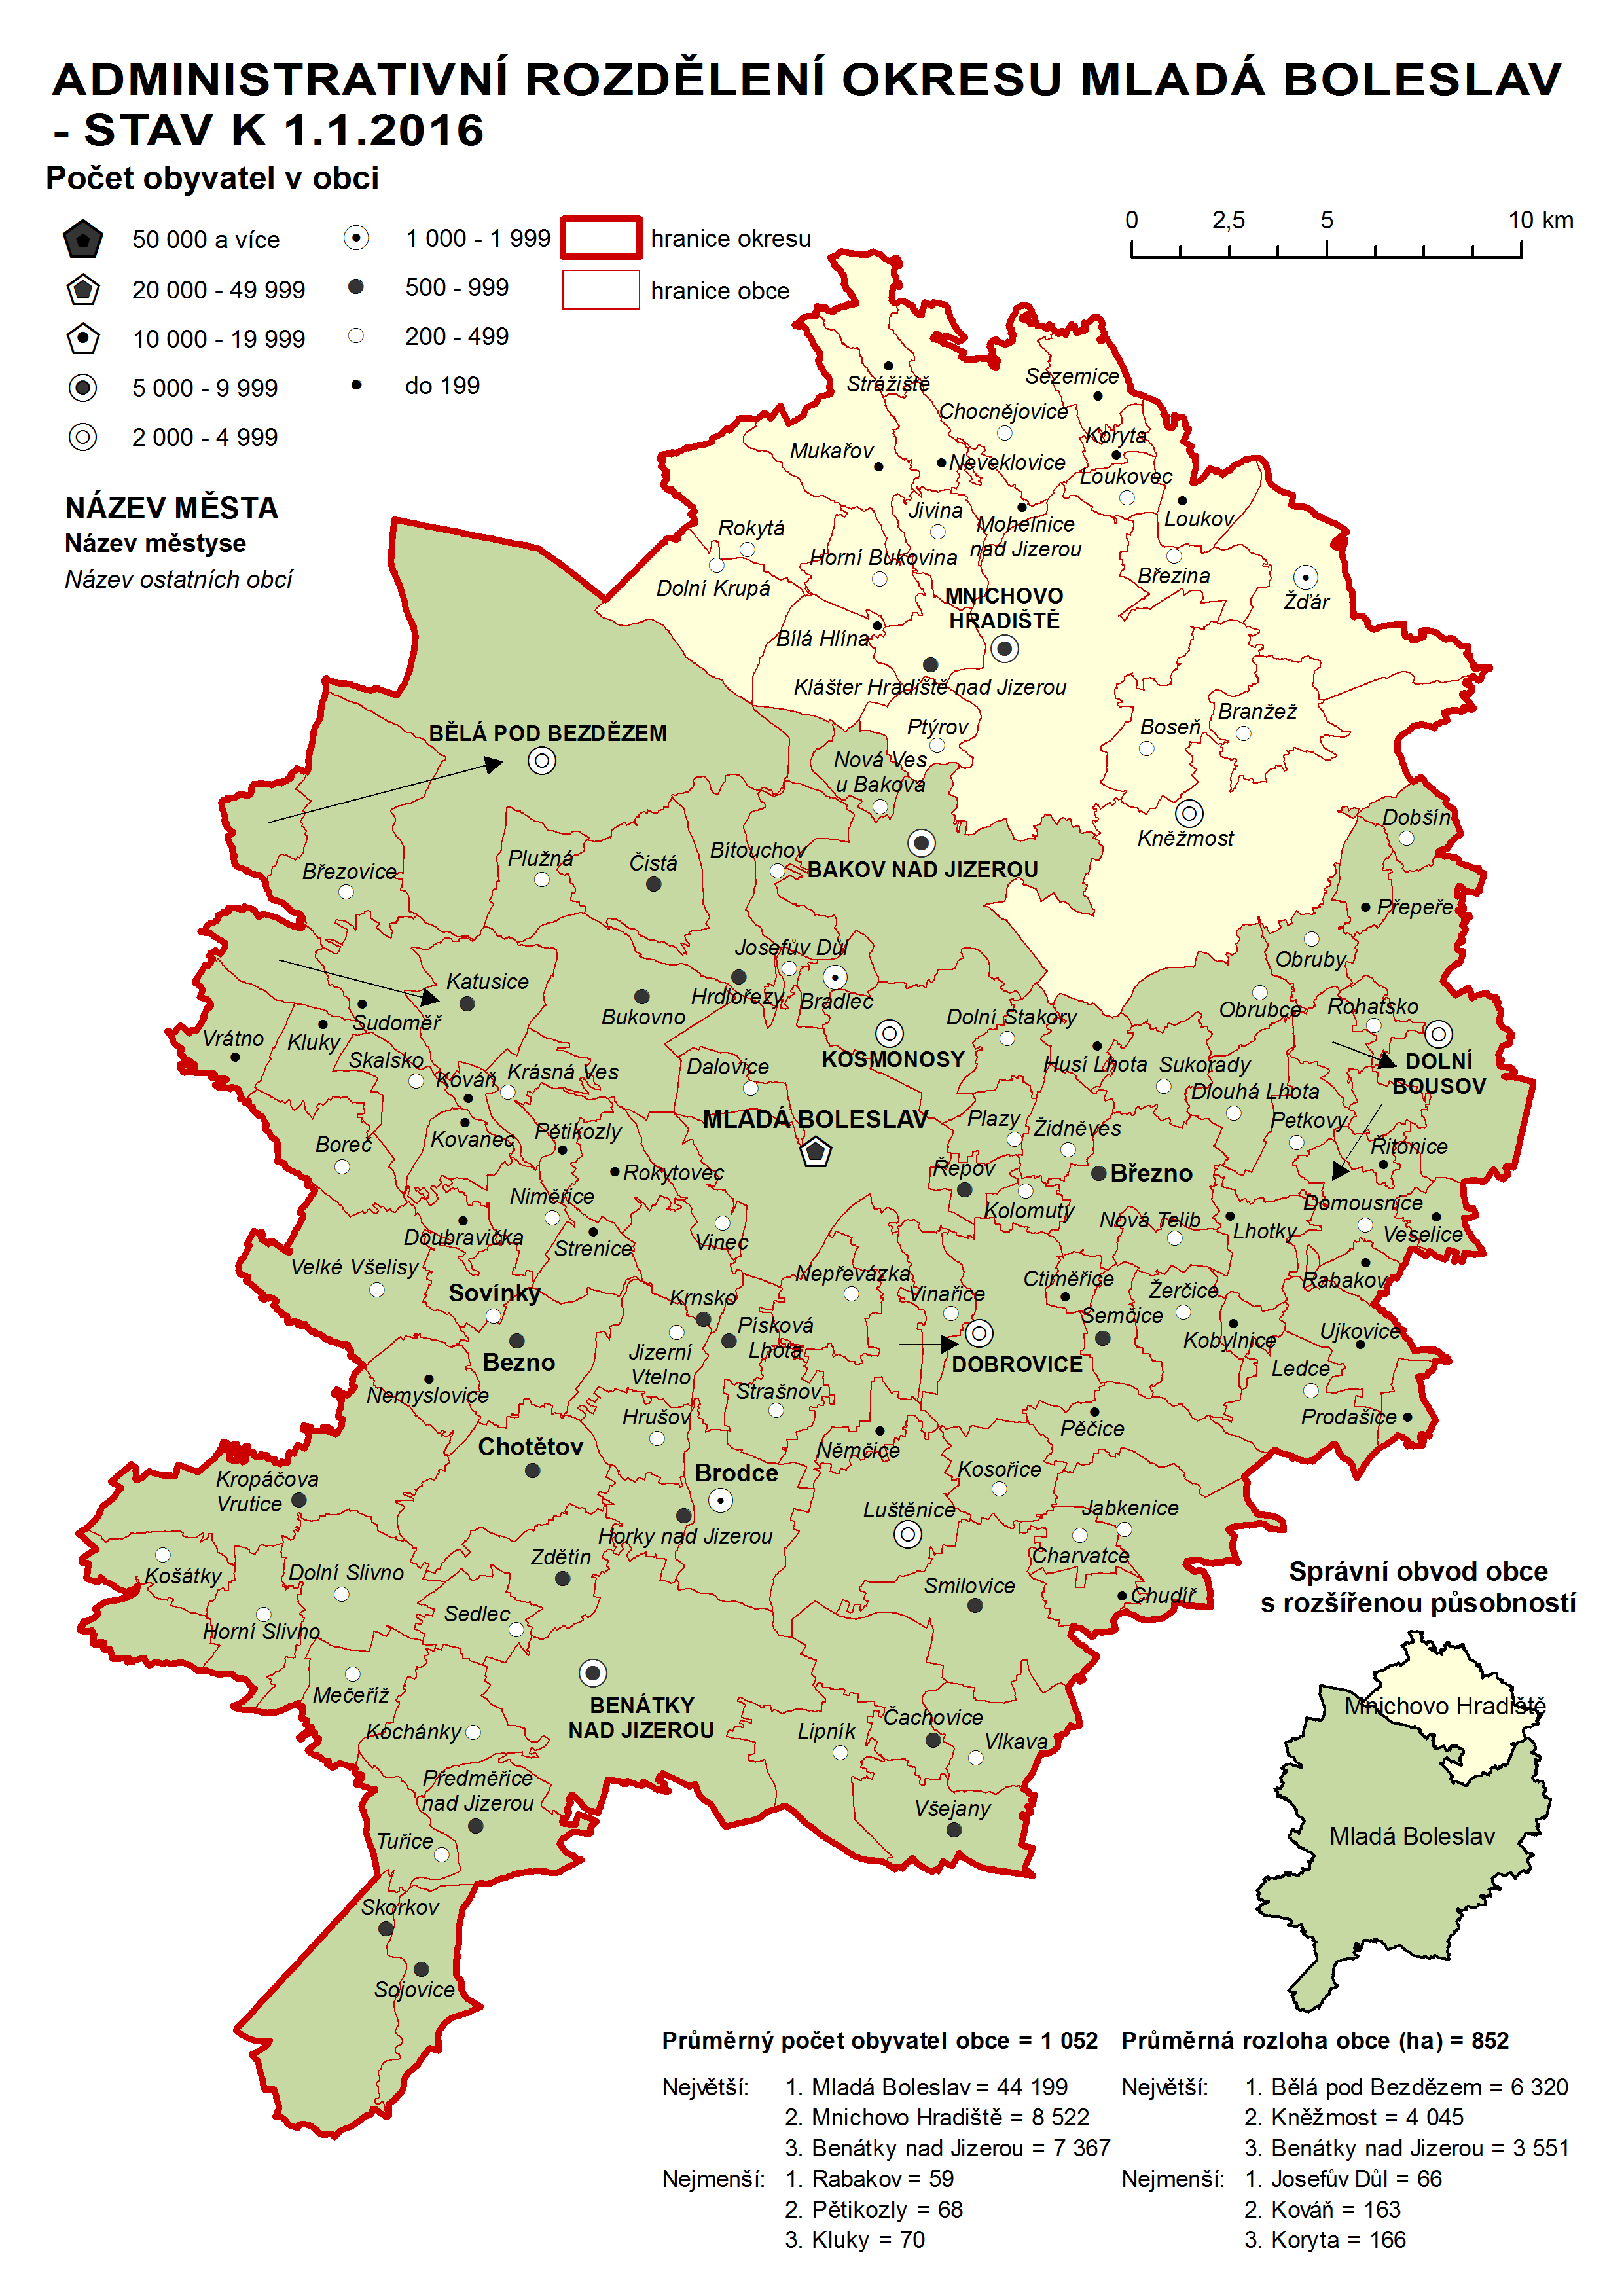 Administrativni rozdělení okresu Mladá Boleslav - stav k 1.1.2016